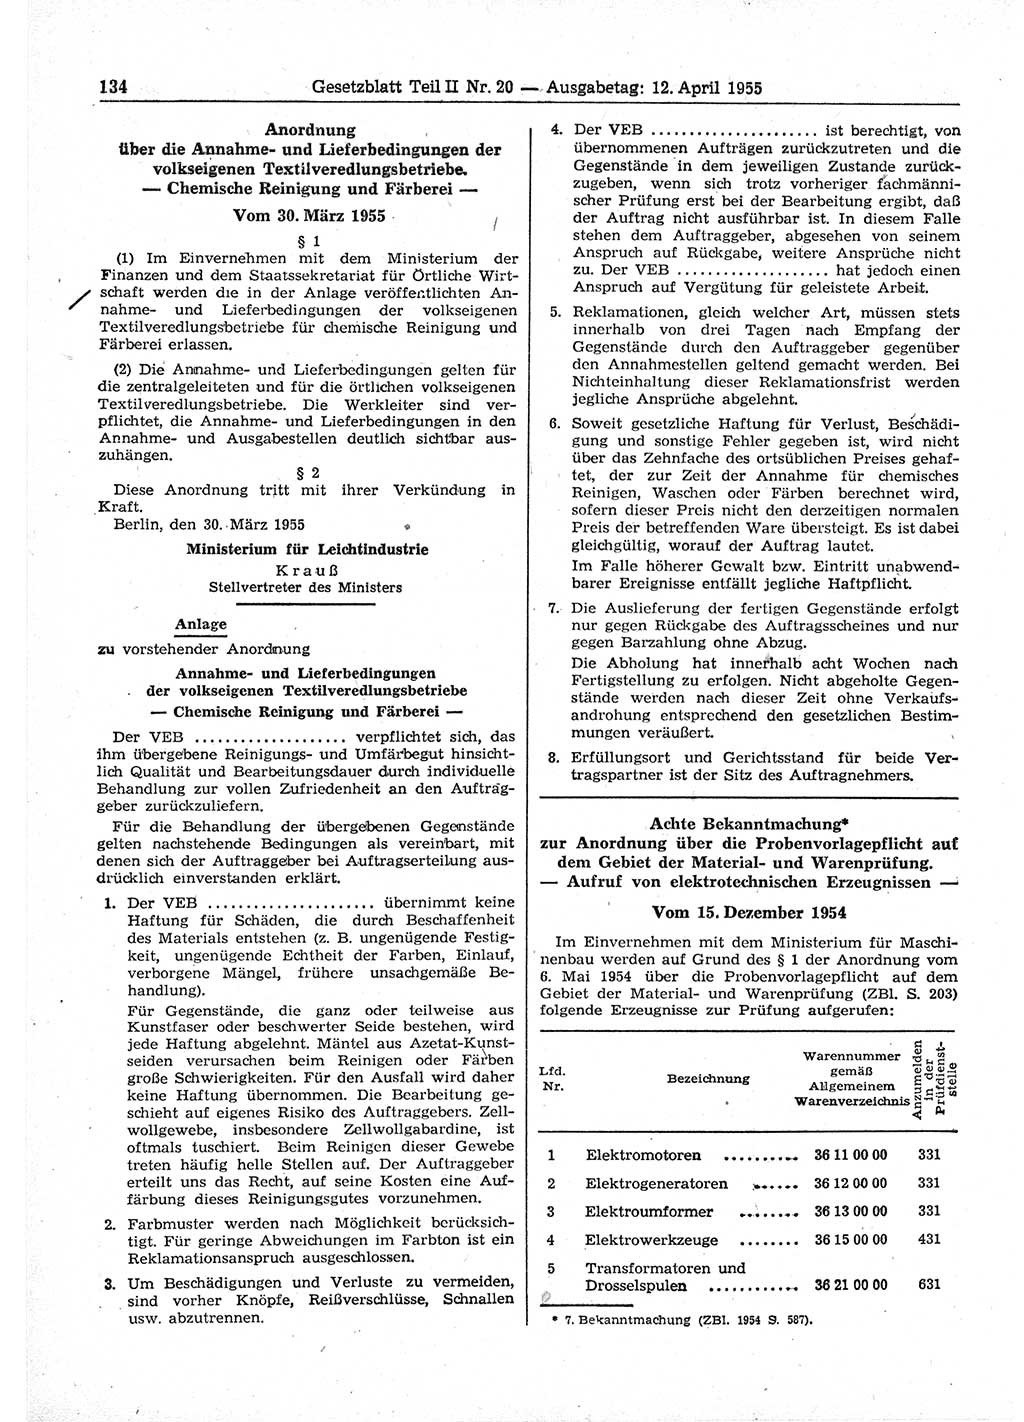 Gesetzblatt (GBl.) der Deutschen Demokratischen Republik (DDR) Teil ⅠⅠ 1955, Seite 134 (GBl. DDR ⅠⅠ 1955, S. 134)